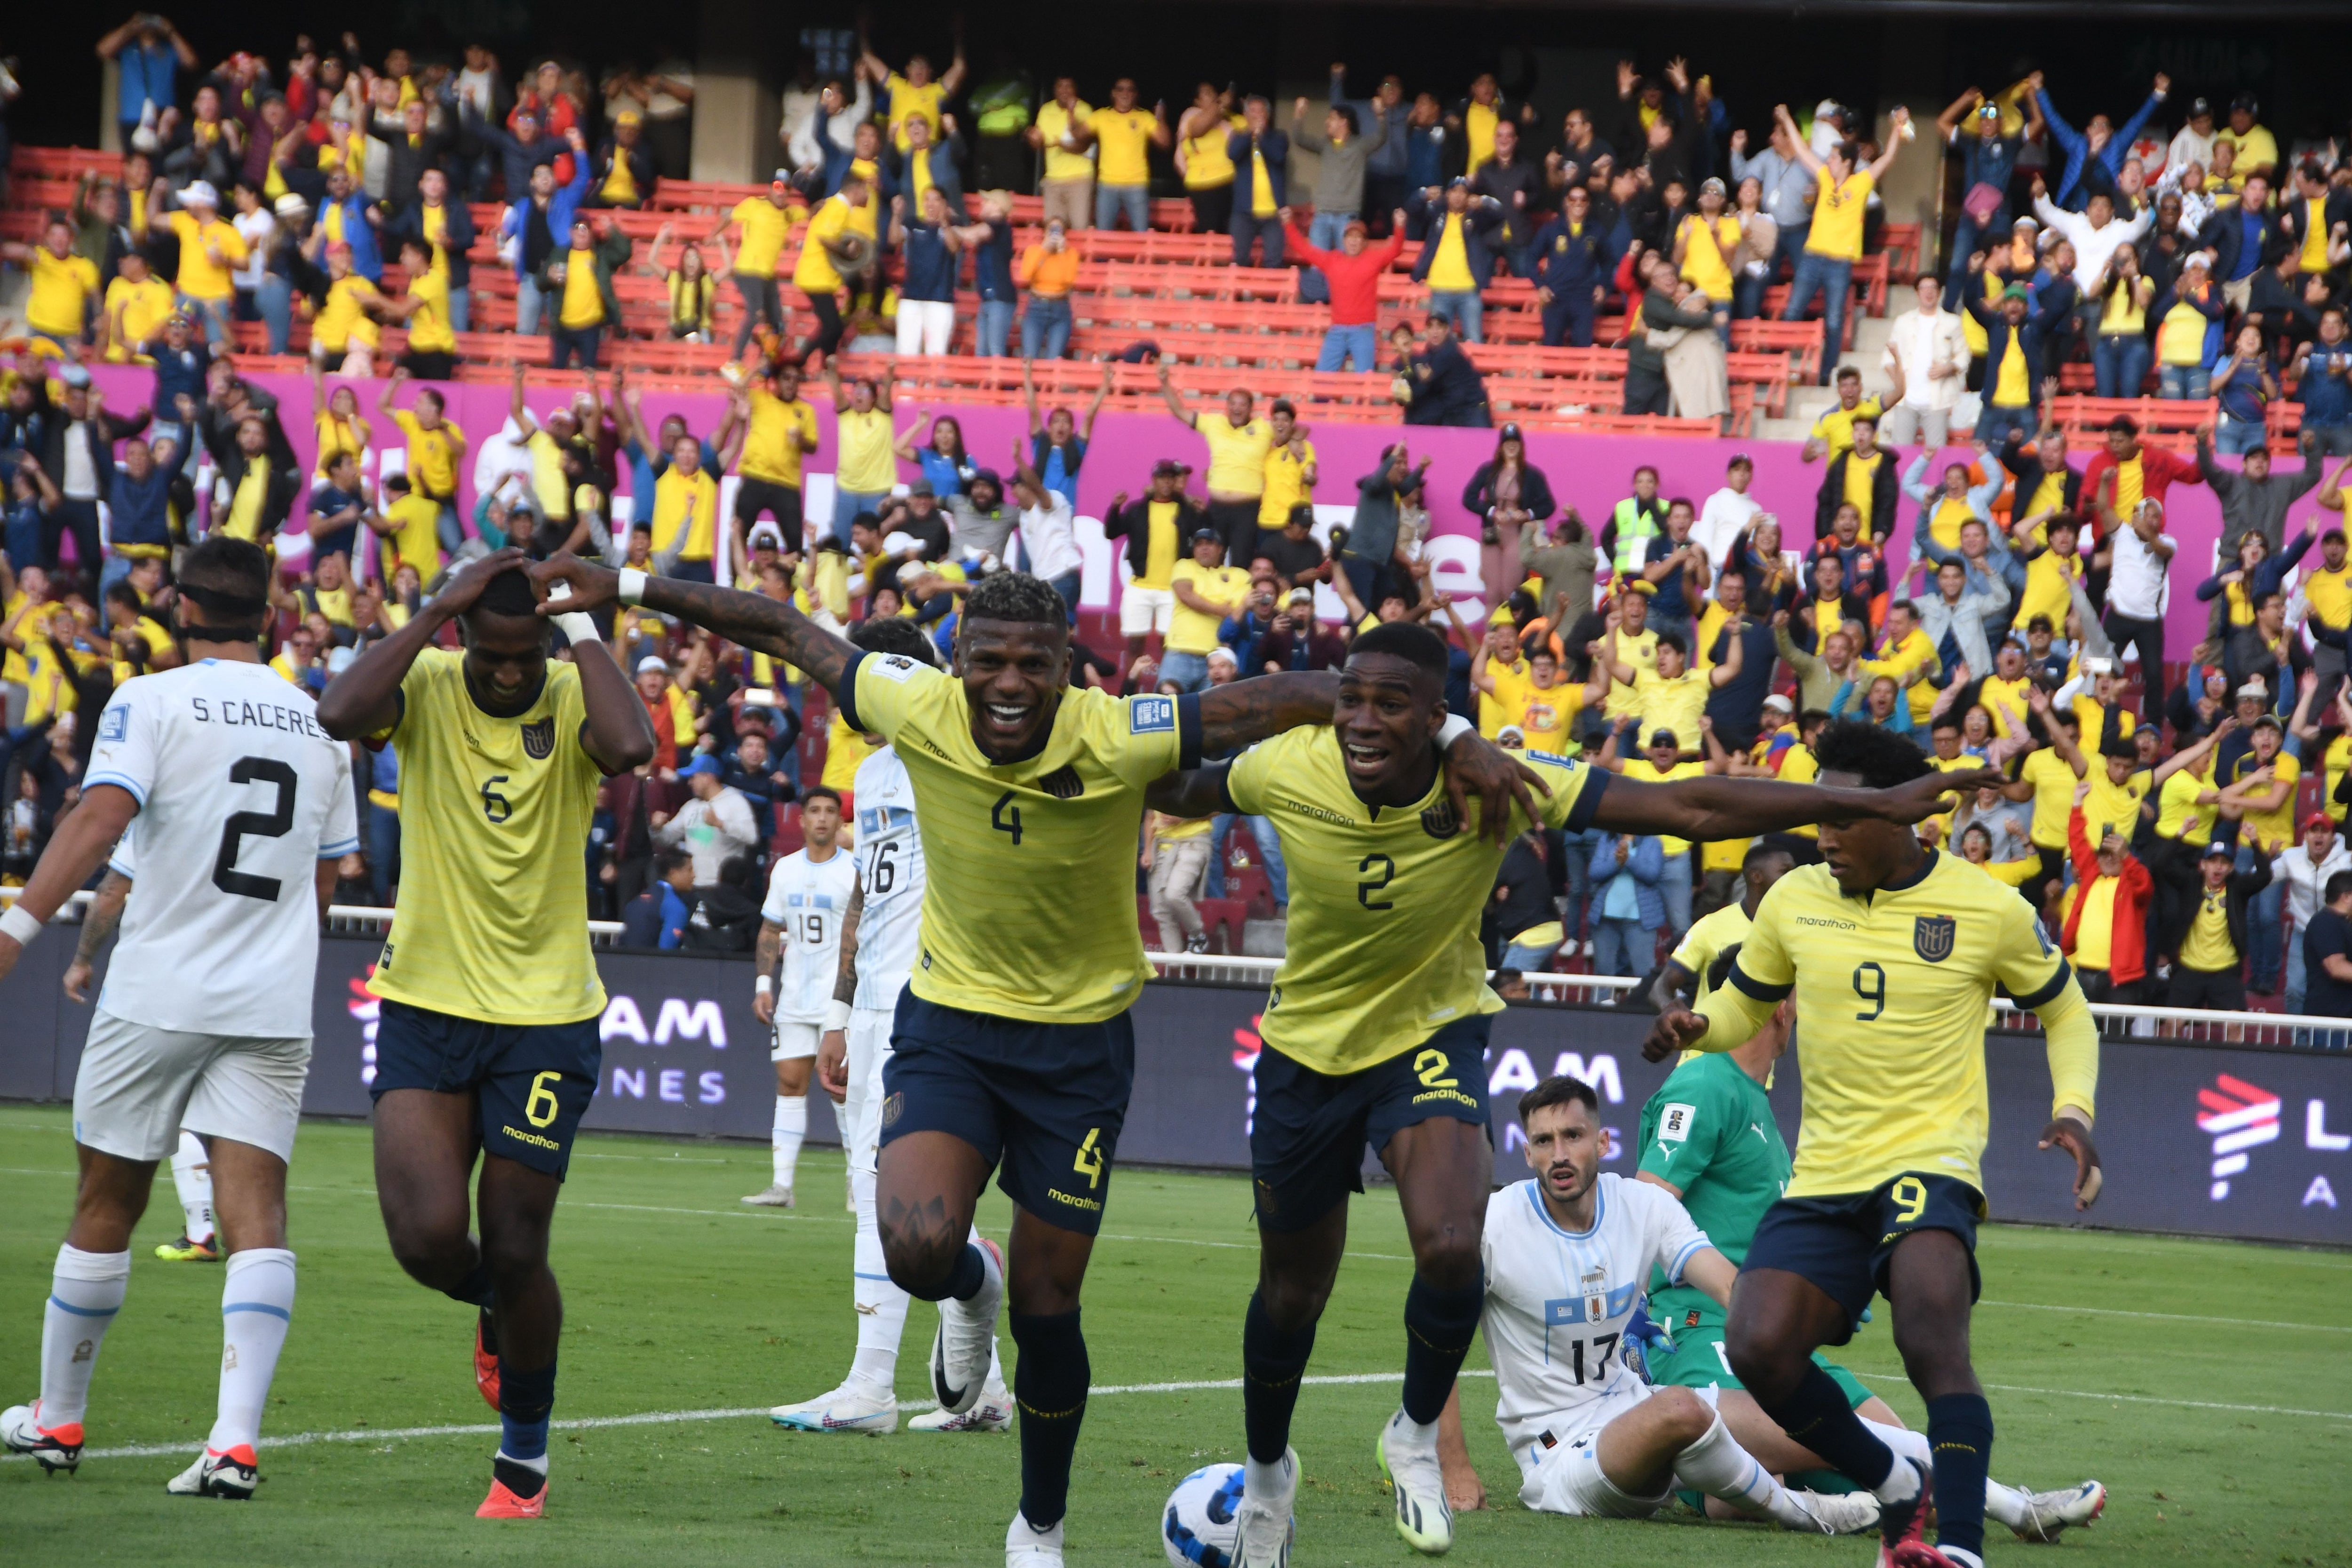 Cómo quedó Ecuador vs Uruguay en Quito por fecha 2 de Eliminatorias 2026 -  Infobae